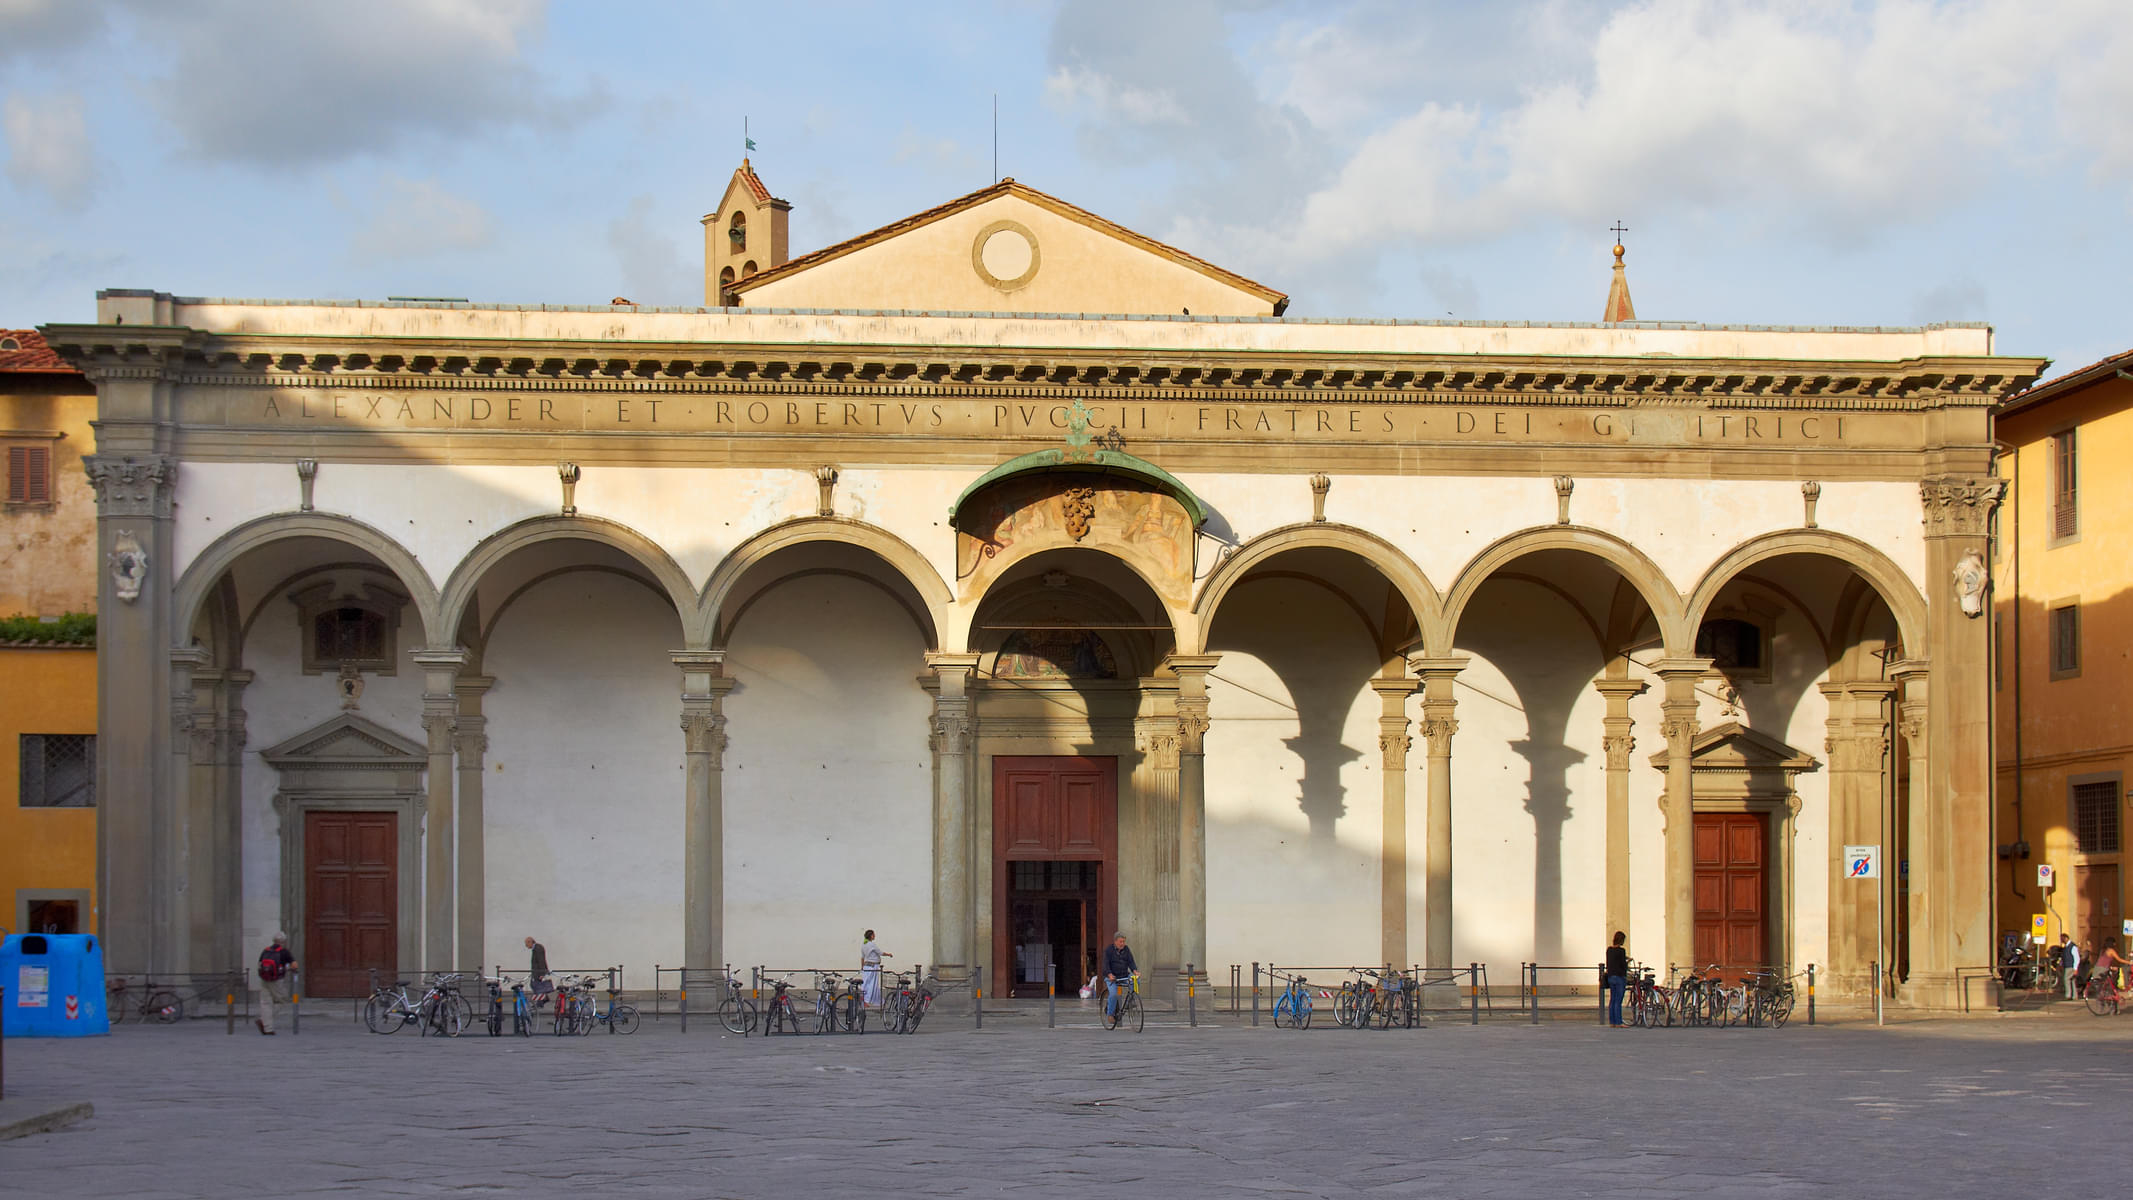 Santissima Annunziata (Church Of The Annunciation)